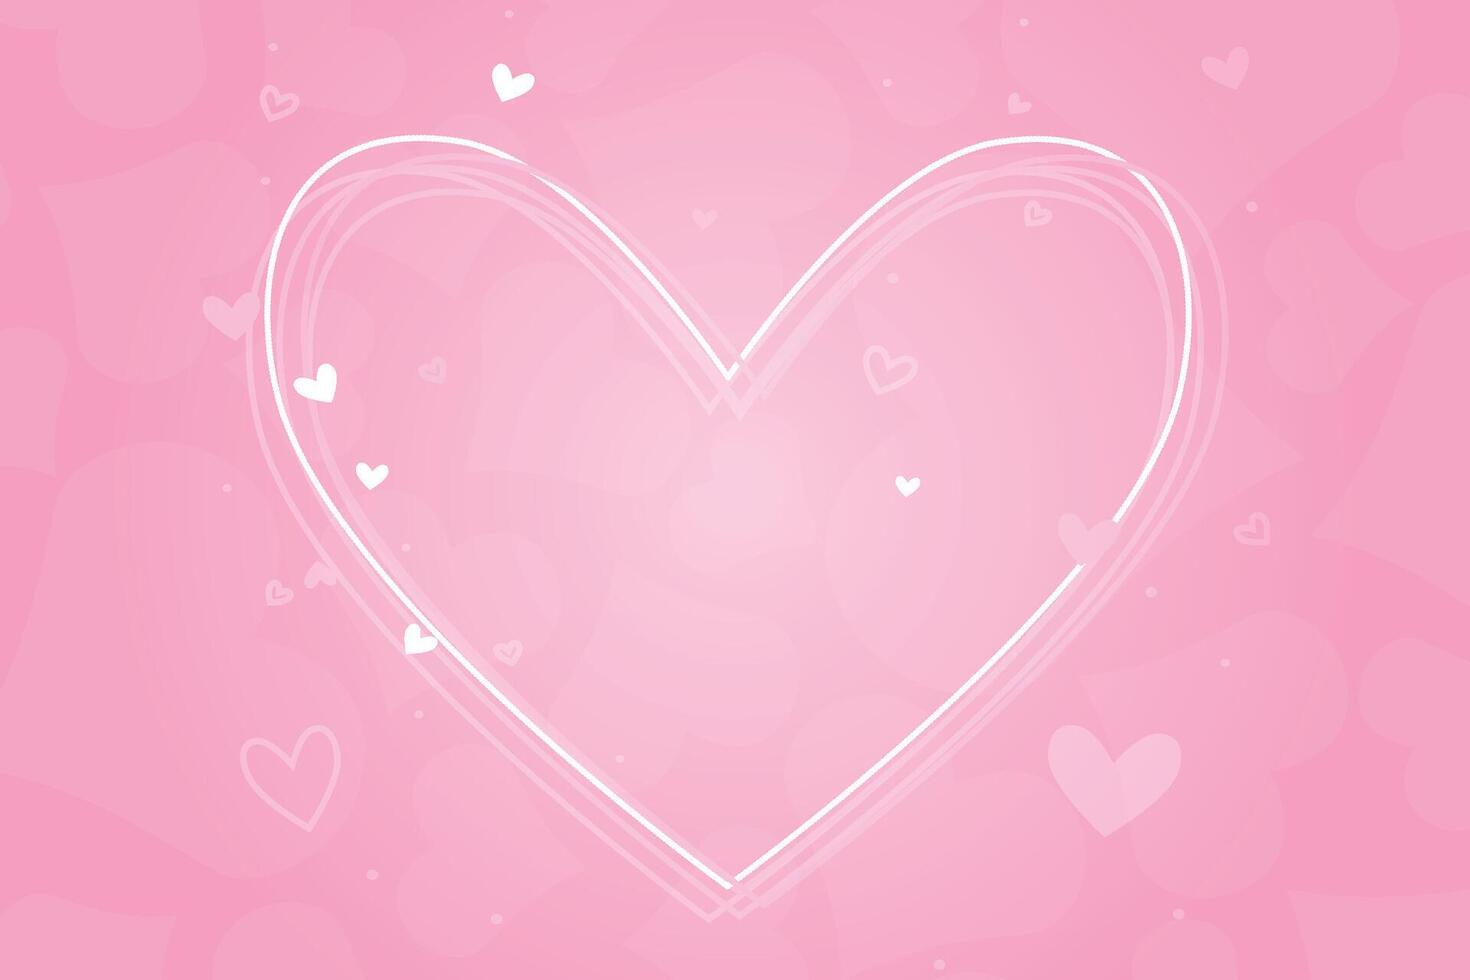 Valentine's Day background, Happy Valentine's Day banner vector